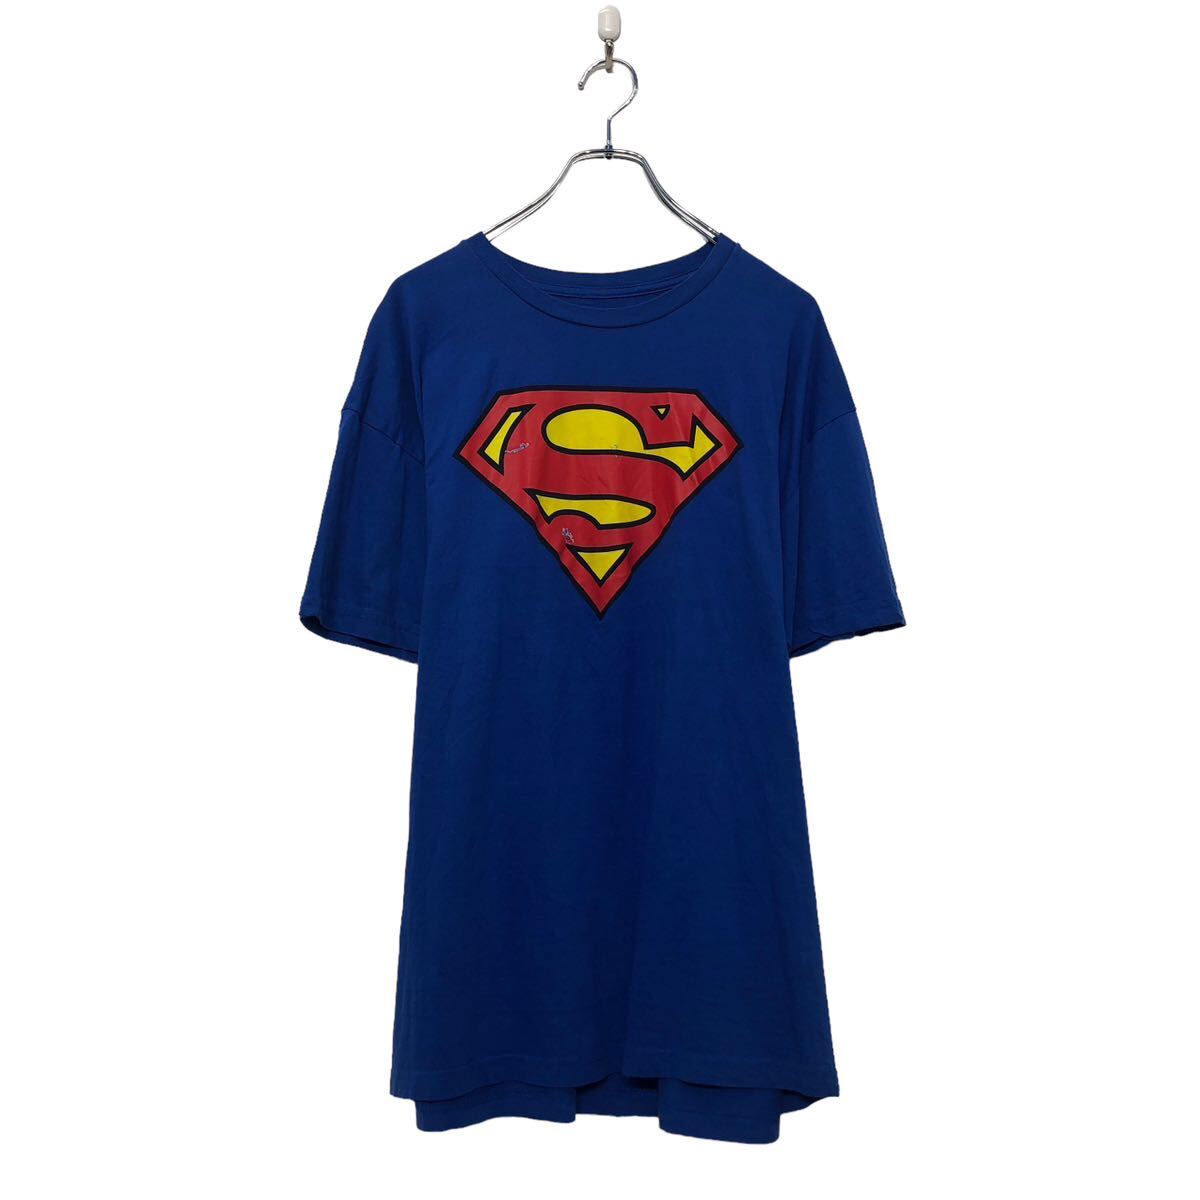 yÁzyÒz Superman  vg TVc XL X[p[} u[ S rbOTCY N[lbN Ò AJd a604-7135